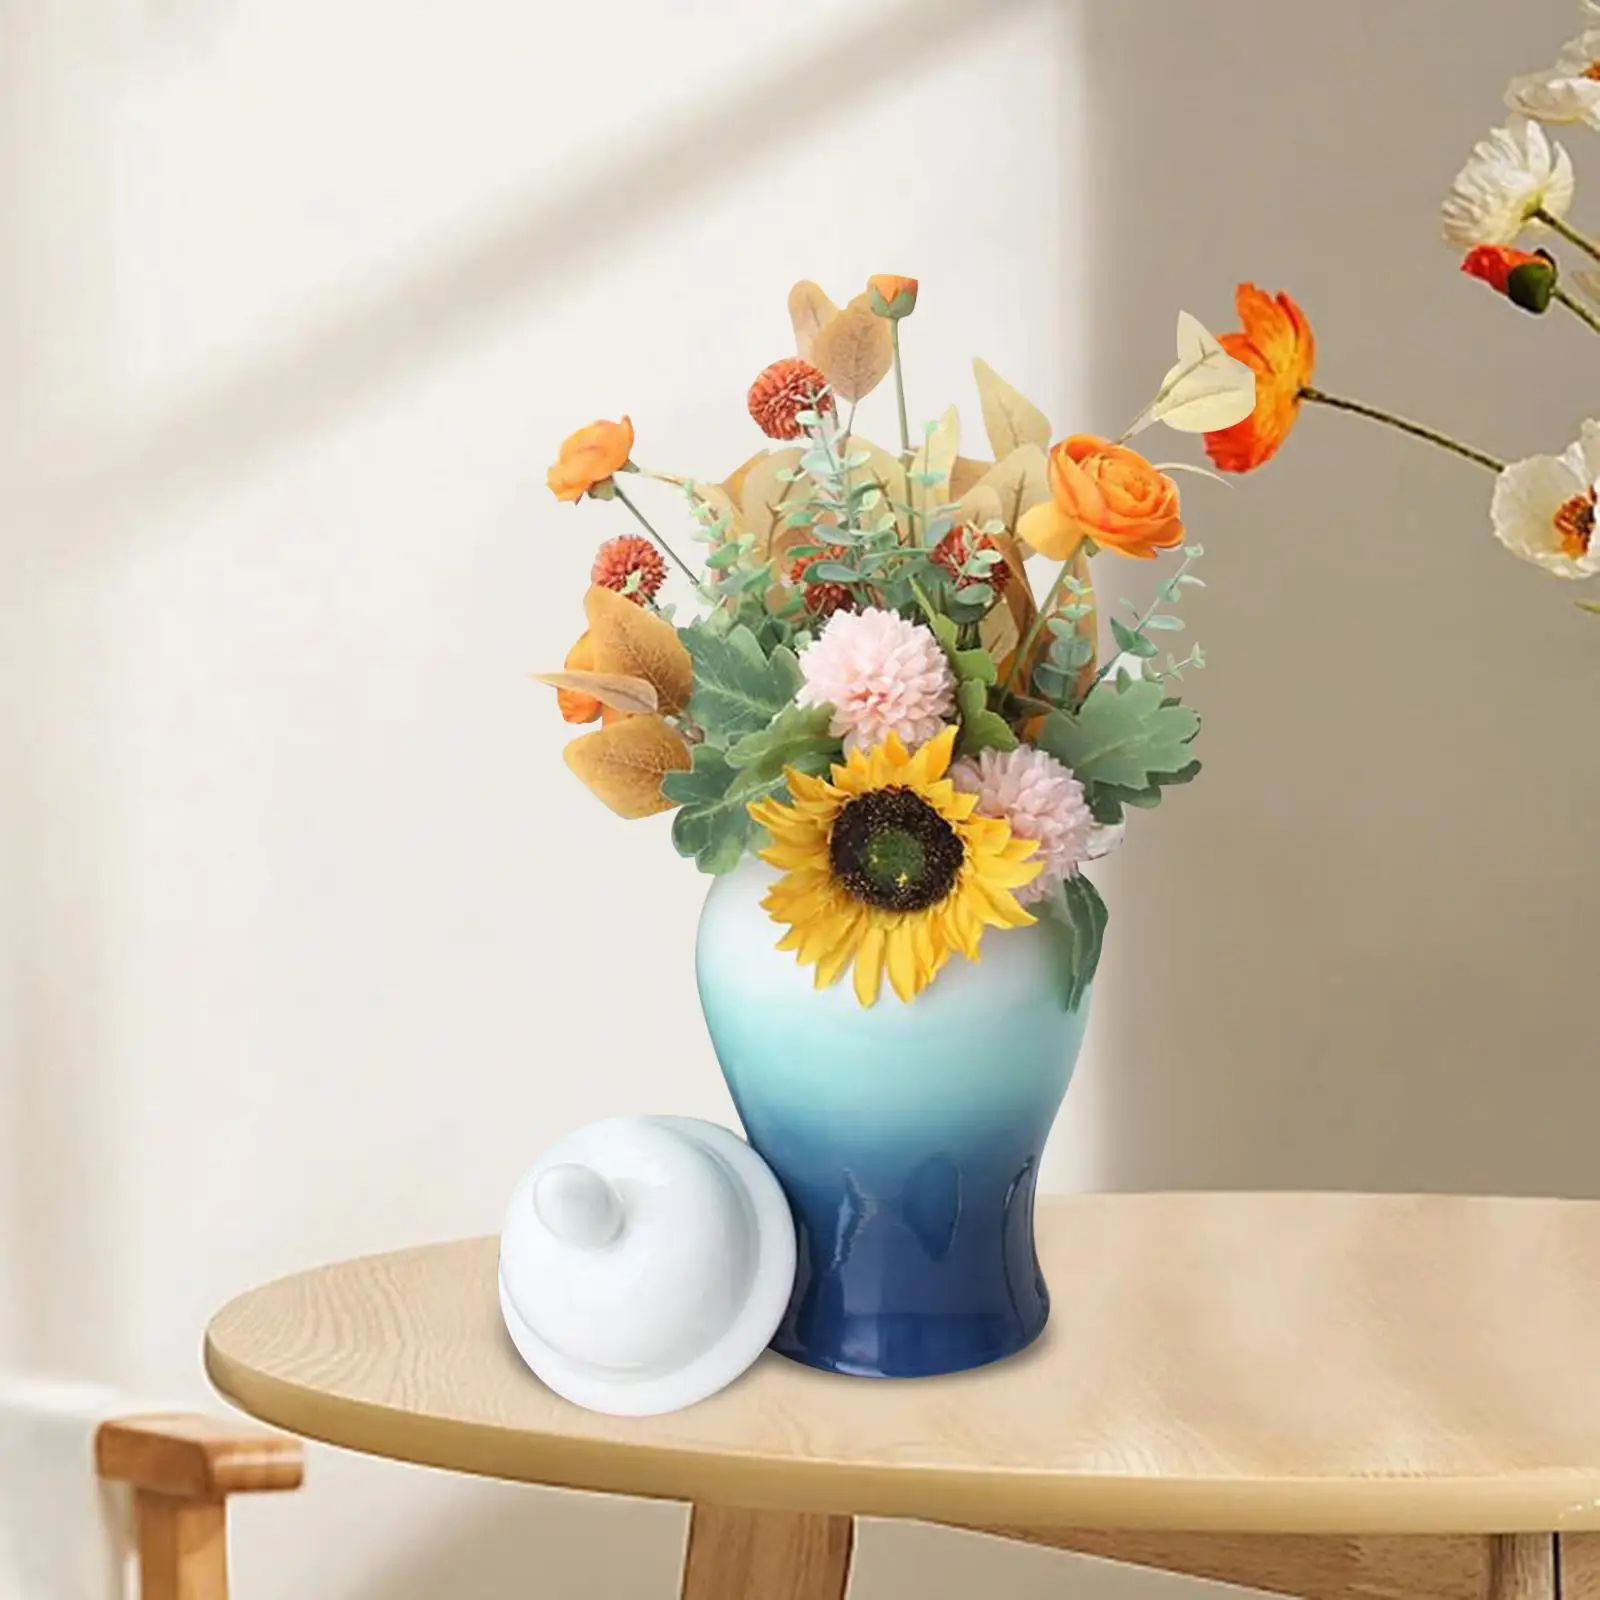 Porcelain Temple Ginger Jar Collection Desktop Ceramic Flower Vase